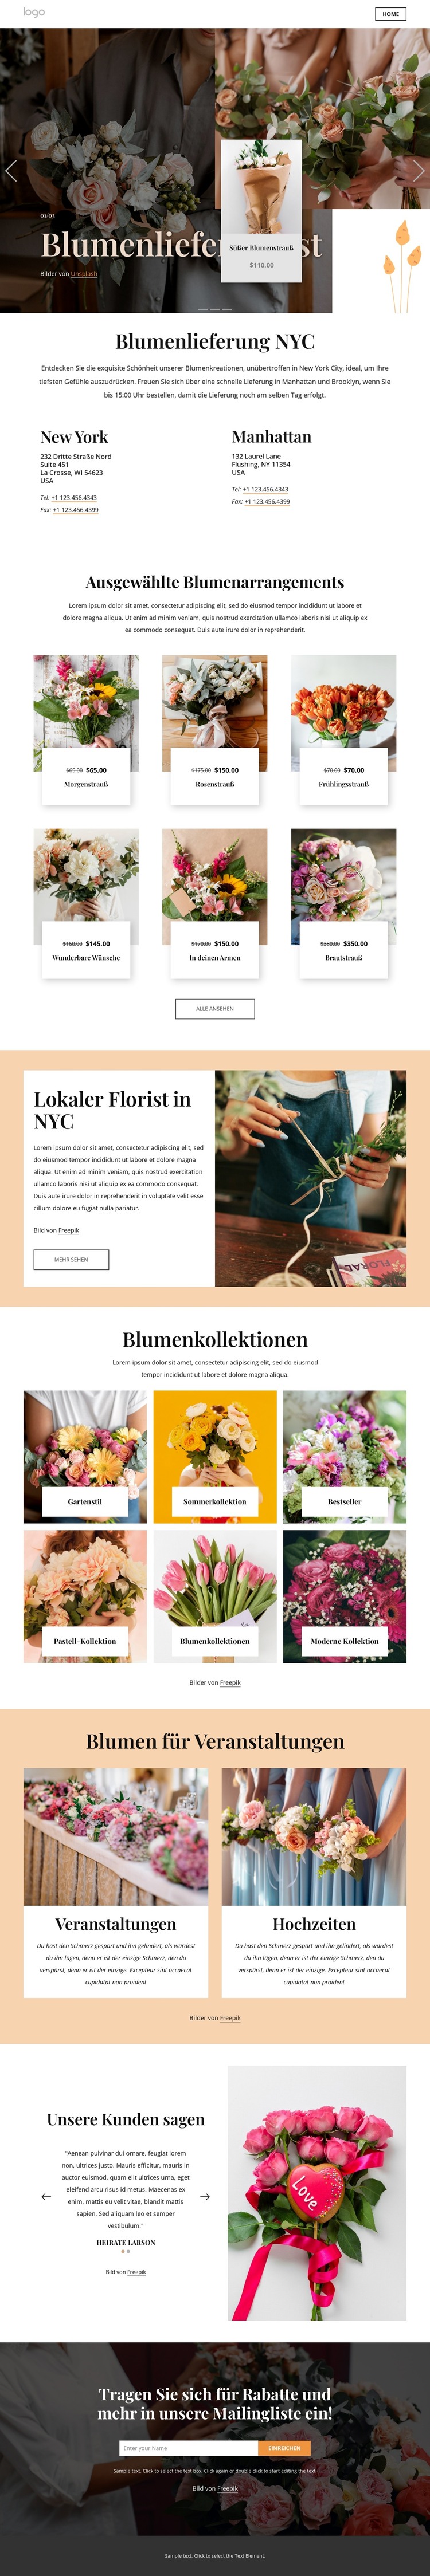 Blumenlieferung NYC HTML-Vorlage